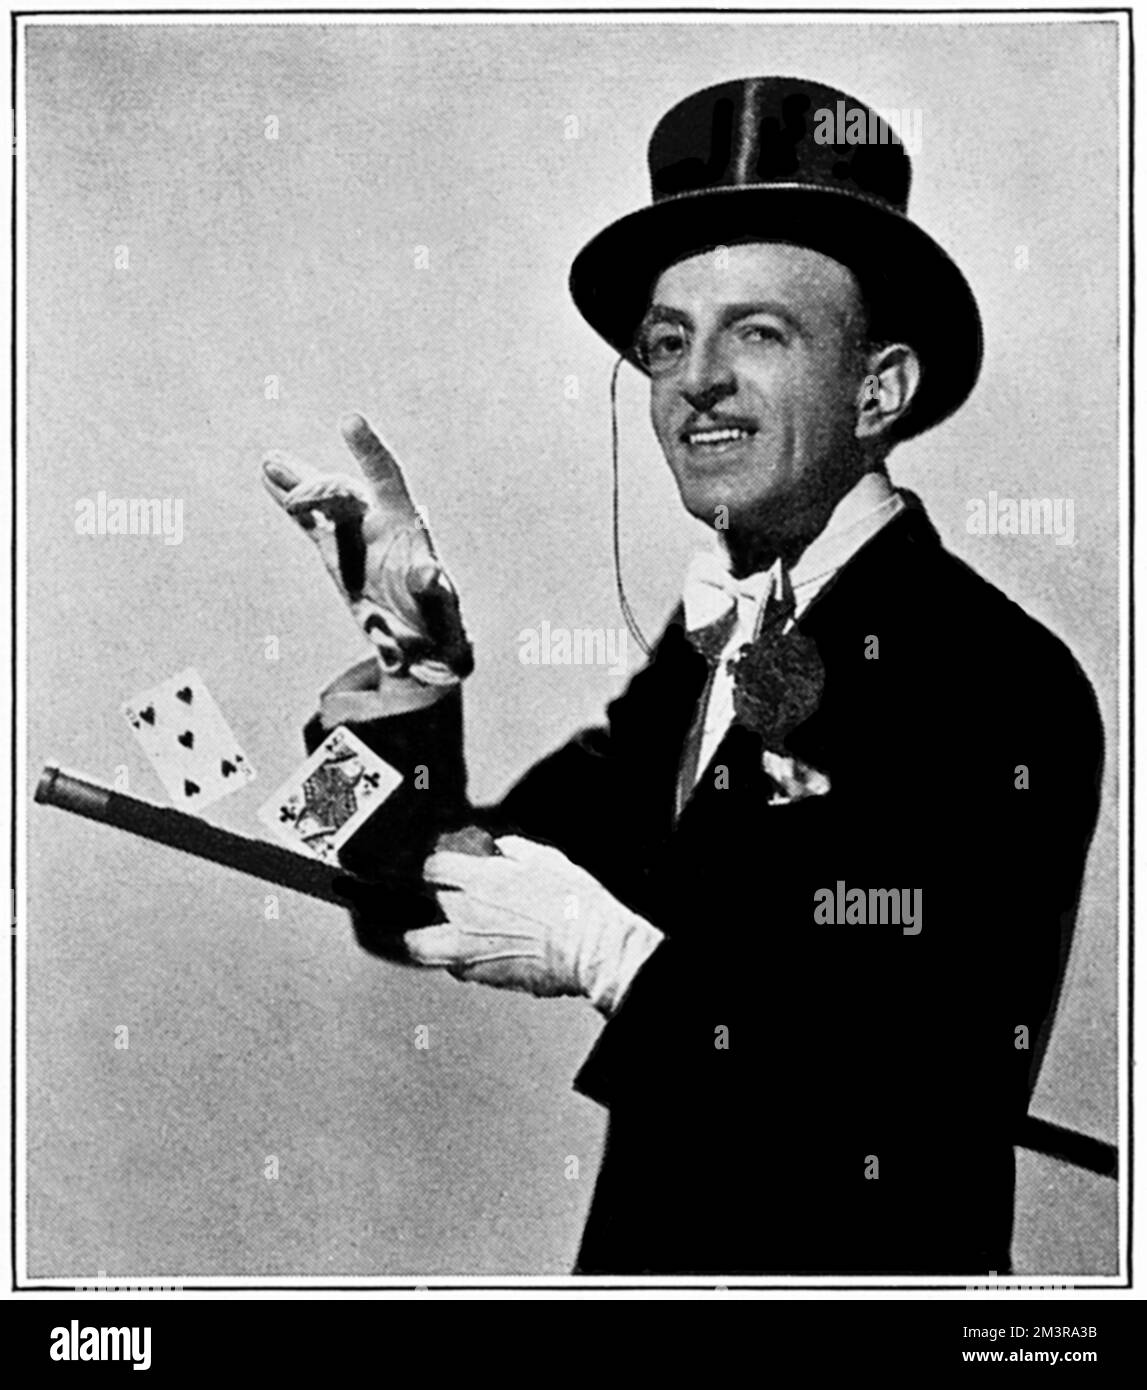 Cardini - Magier (Richard Valentine Pitchford) (1895-1973). Geboren und aufgewachsen in Großbritannien (und WW1 in der britischen Armee gedient), arbeitete er hauptsächlich in den Vereinigten Staaten von Amerika und erreichte Ruhm, indem er Magie mit einer sehr unterhaltsamen Bühnenvorstellung kombiniert und in den folgenden Jahrzehnten das Vorbild für viele Zauberer und Zauberer legte. Datum: 1937 Stockfoto